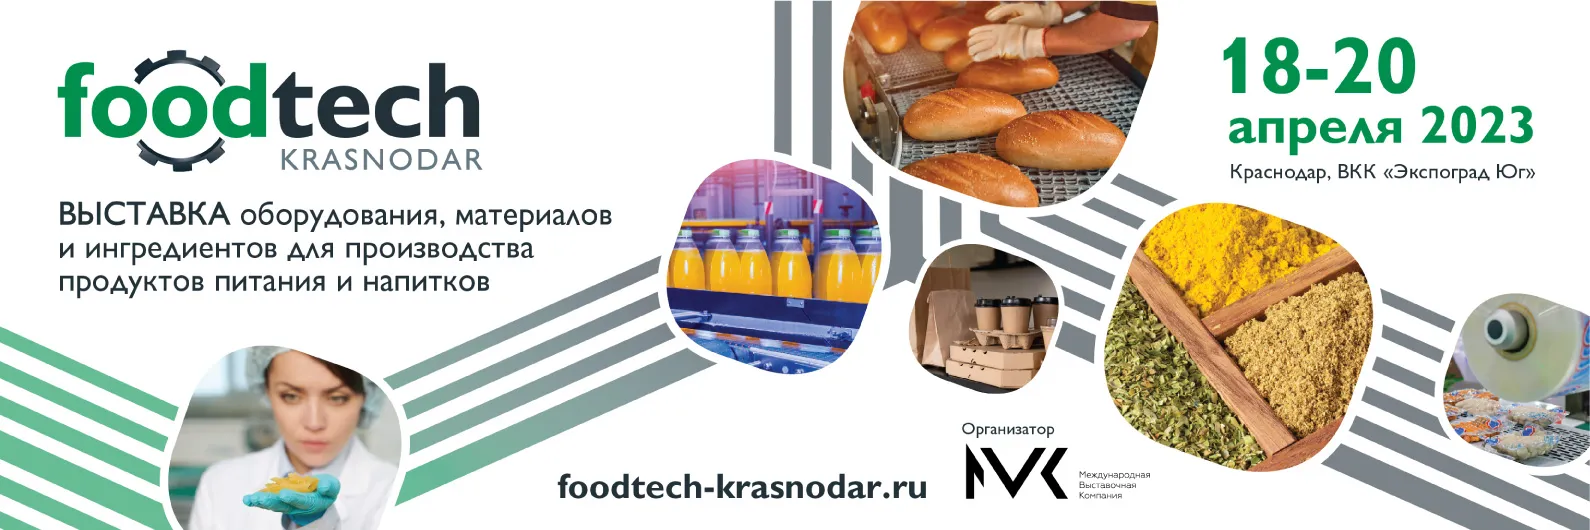 Выставка FoodTech Krasnodar 2023